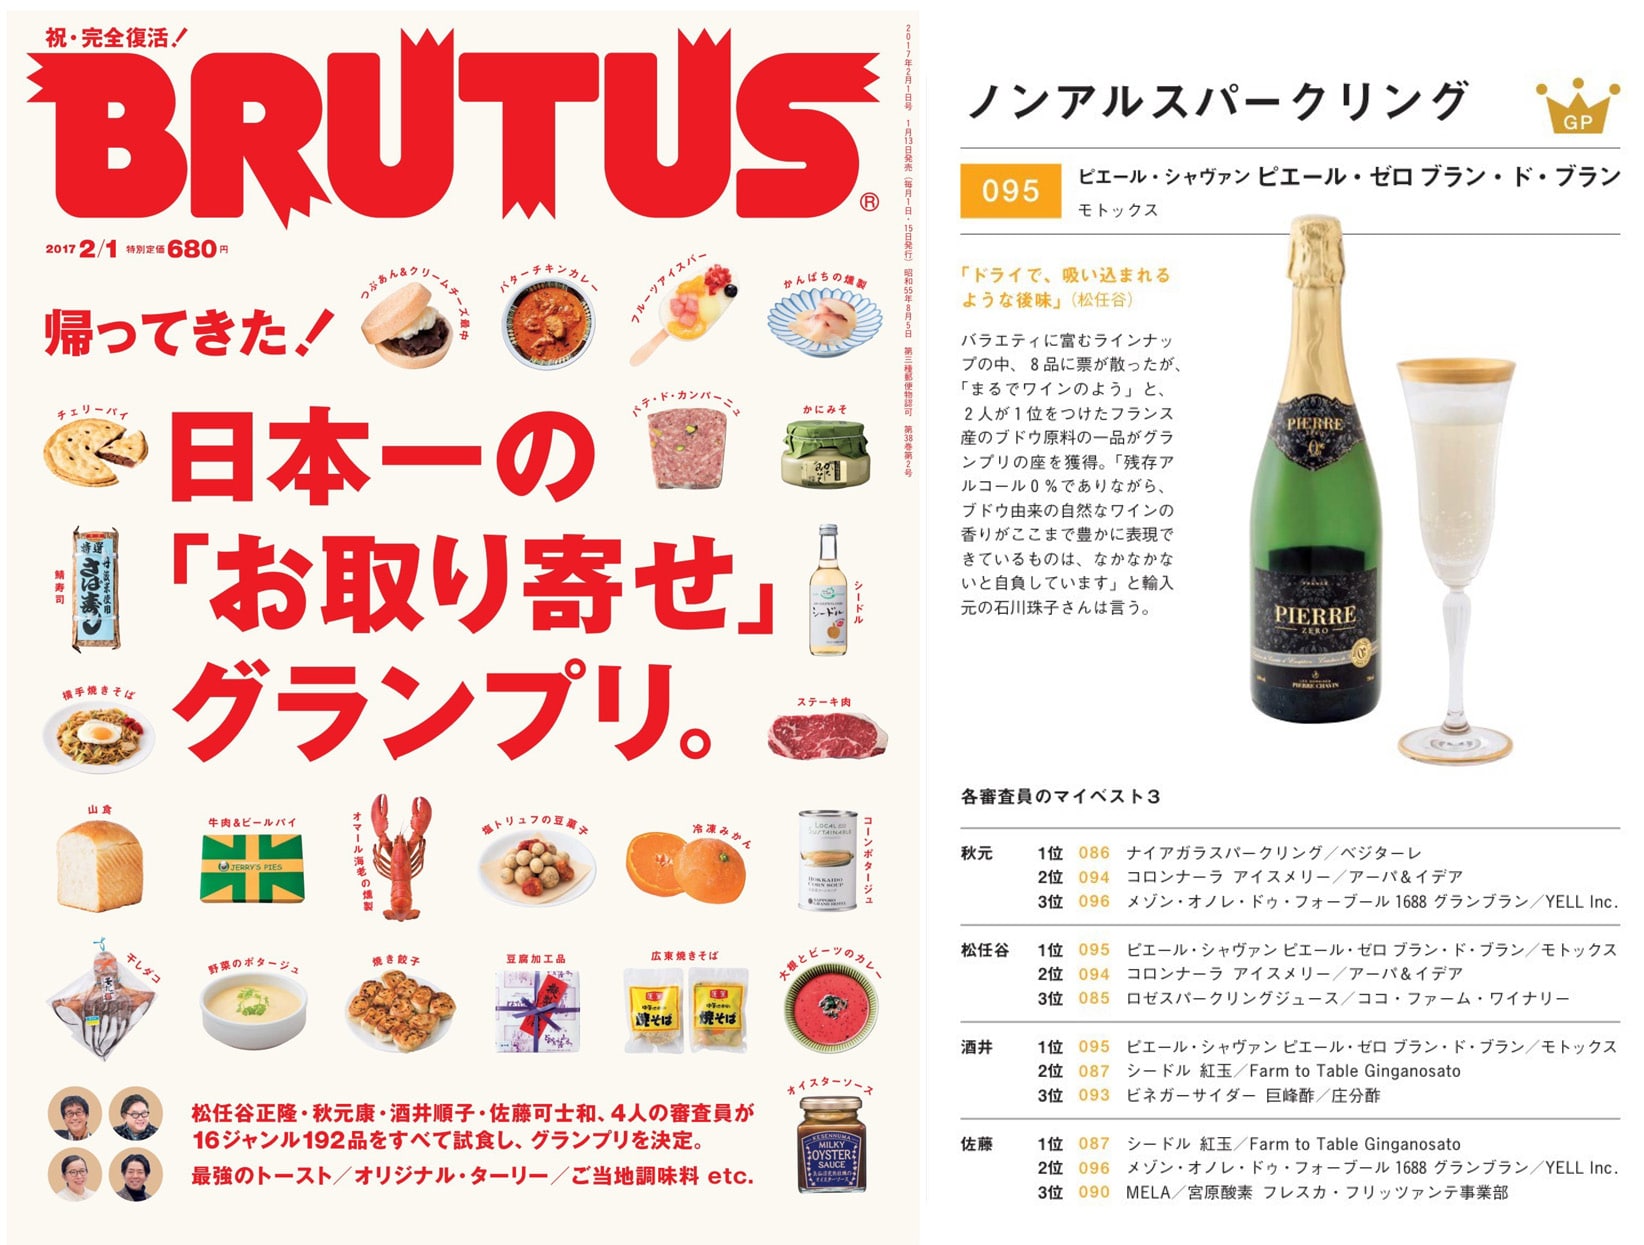 Pierre Zéro récompensé dans le magazine japonais BRUTUS